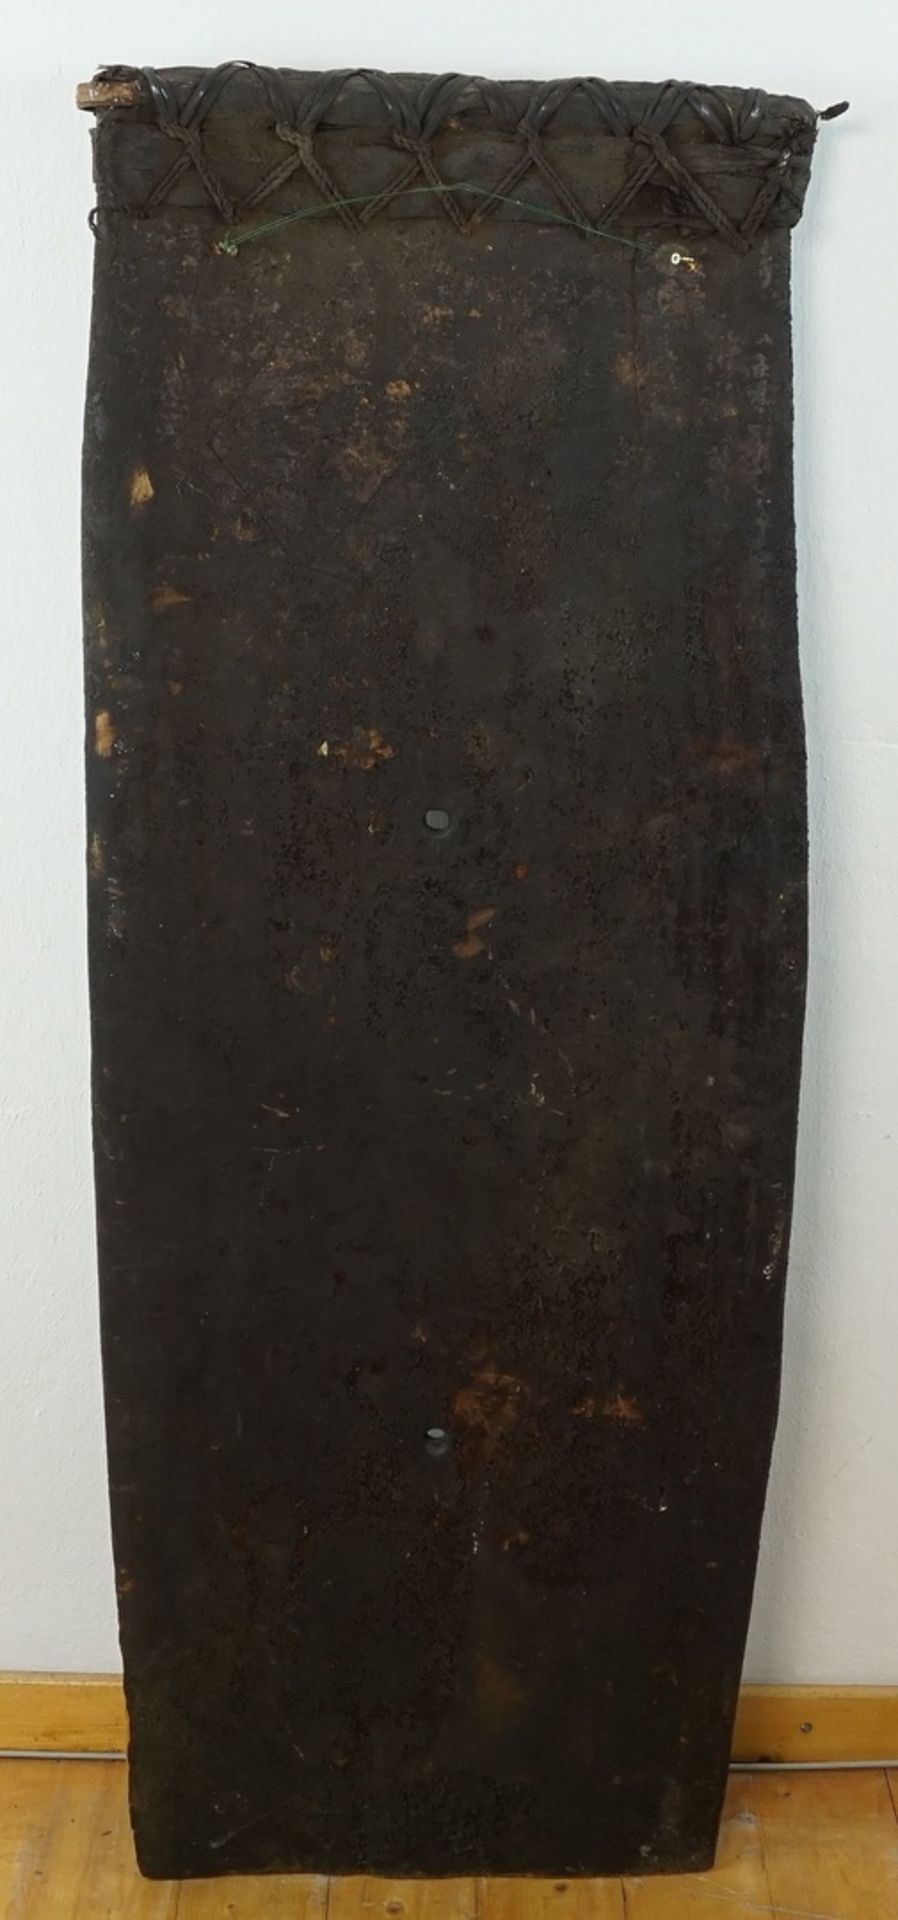 Kampfschild, Papua-Neuguinea, 1. Hälfte 20. Jh.Holz, starke Krustenpatina, Rand mit Blättern - Image 3 of 4